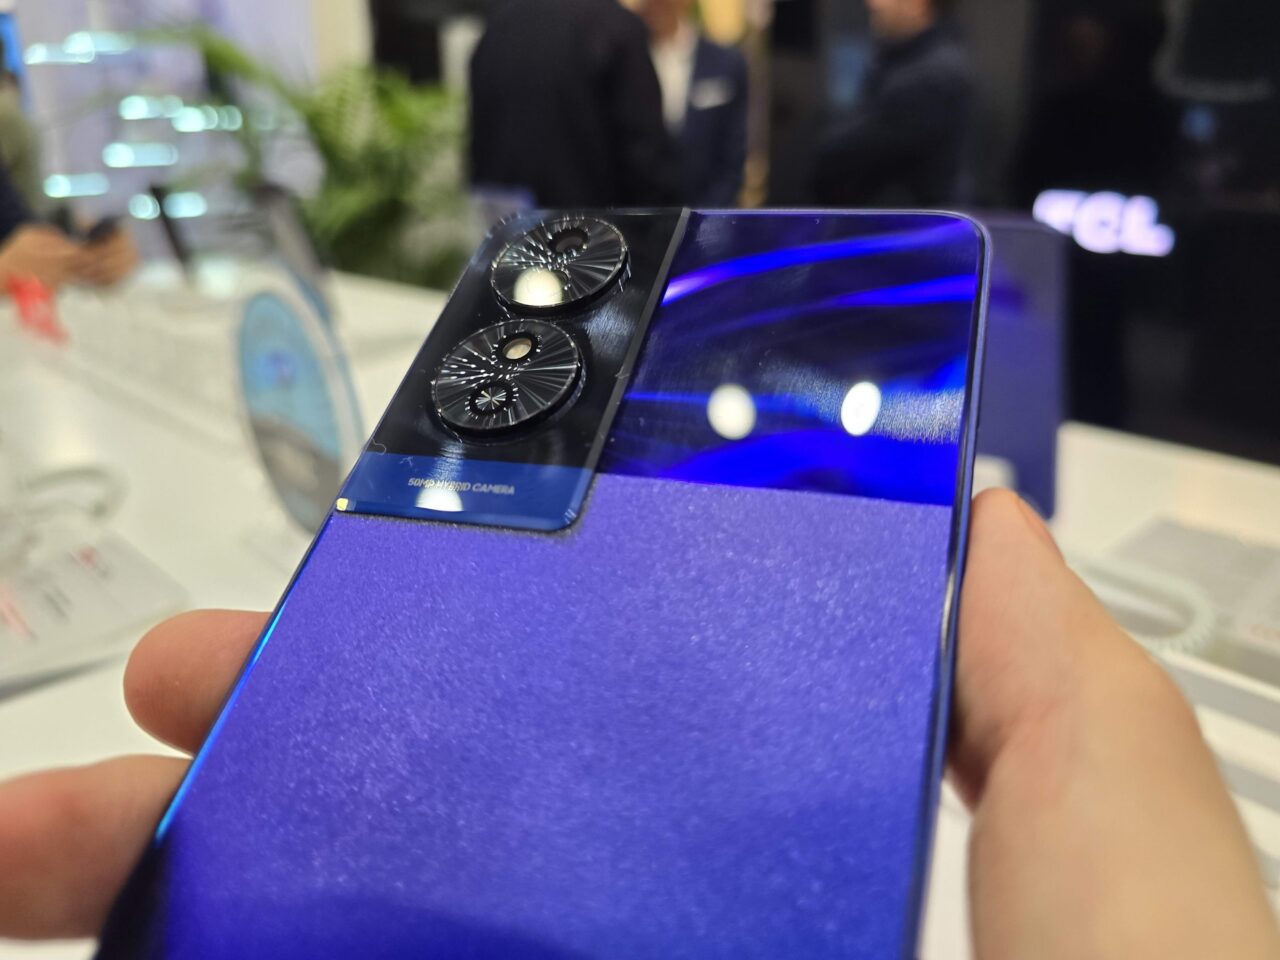 Smartfon trzymany w ręce z widocznym tylnym aparatem odblaskowym na błyszczącej niebieskiej obudowie, na nieostrych tle z elementami wystroju sklepu.